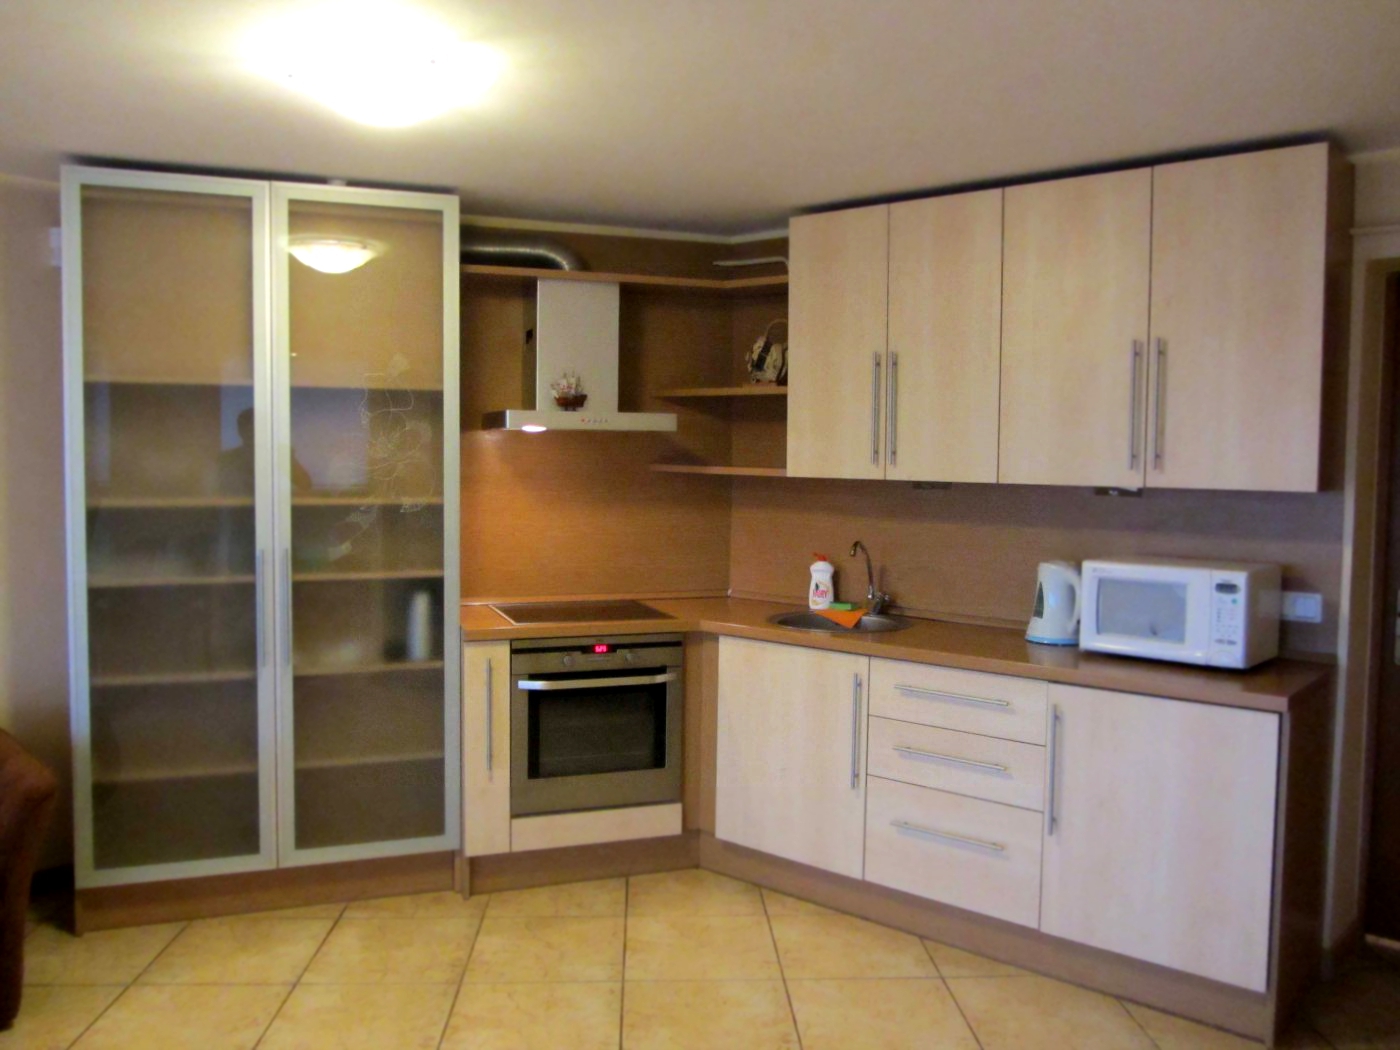 Дизайн угловой кухни 15 кв.м в квартире-студии (